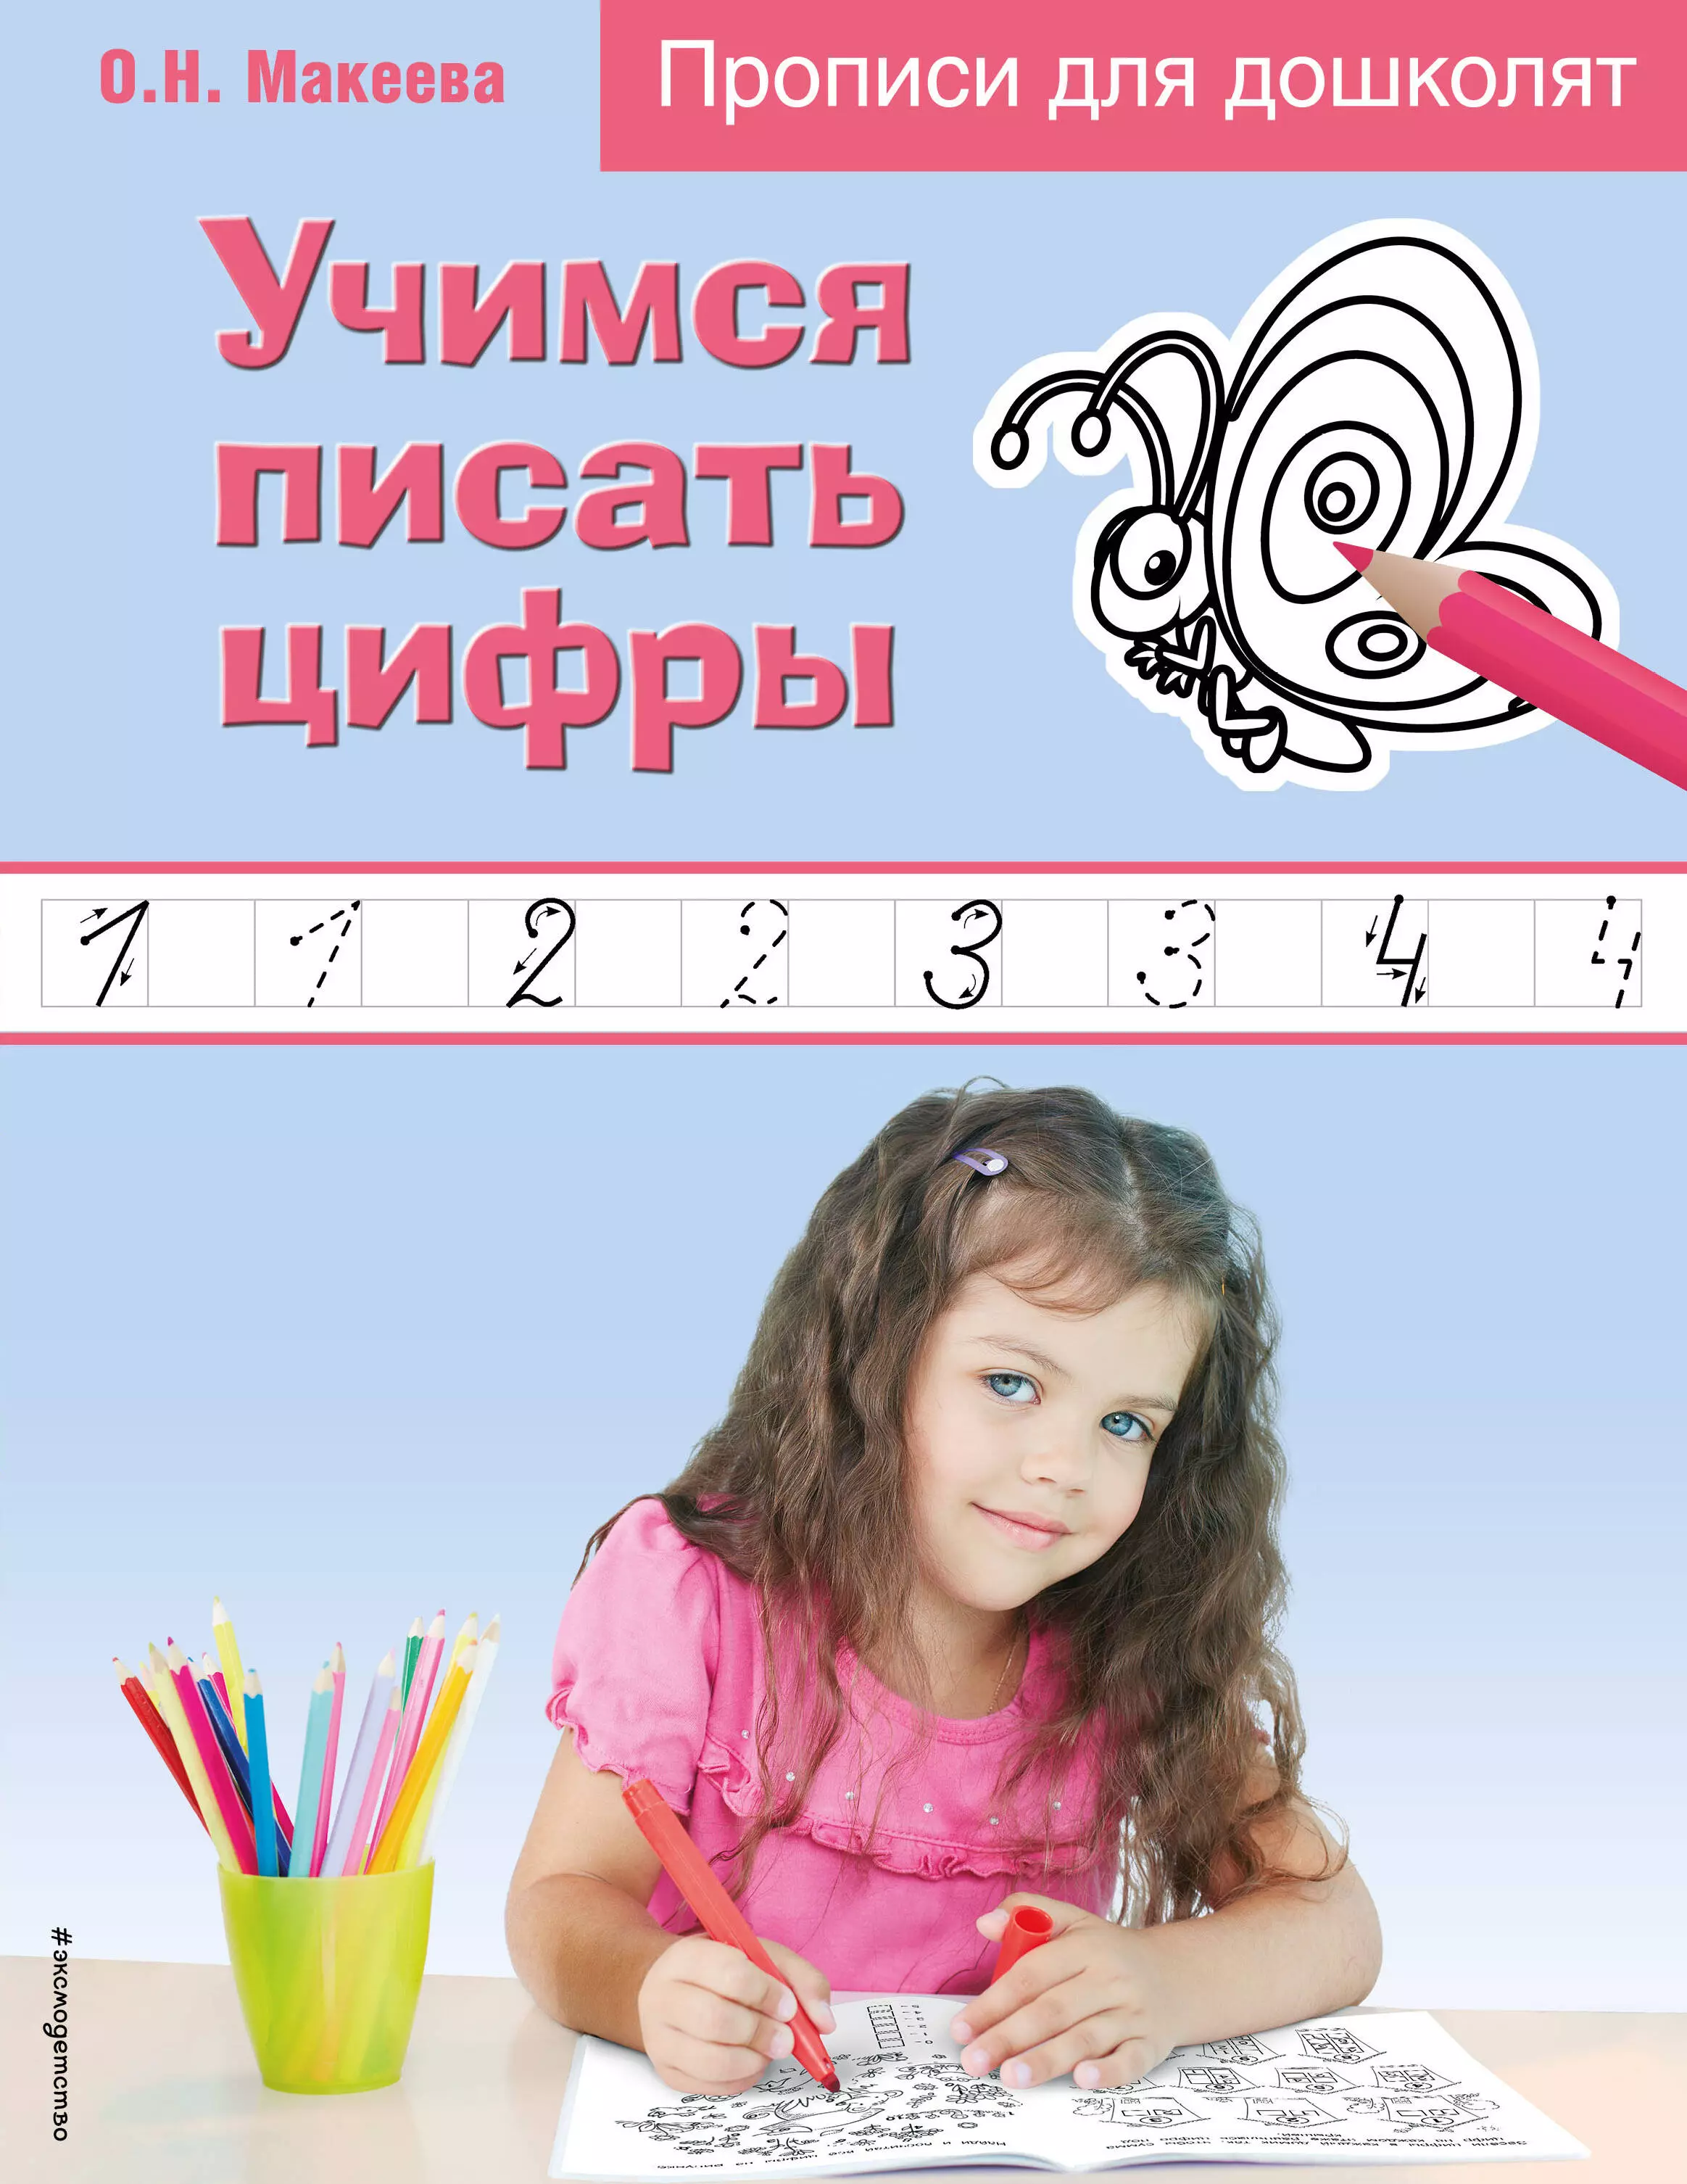 Макеева Ольга Николаевна - Учимся писать цифры. Прописи для дошколят